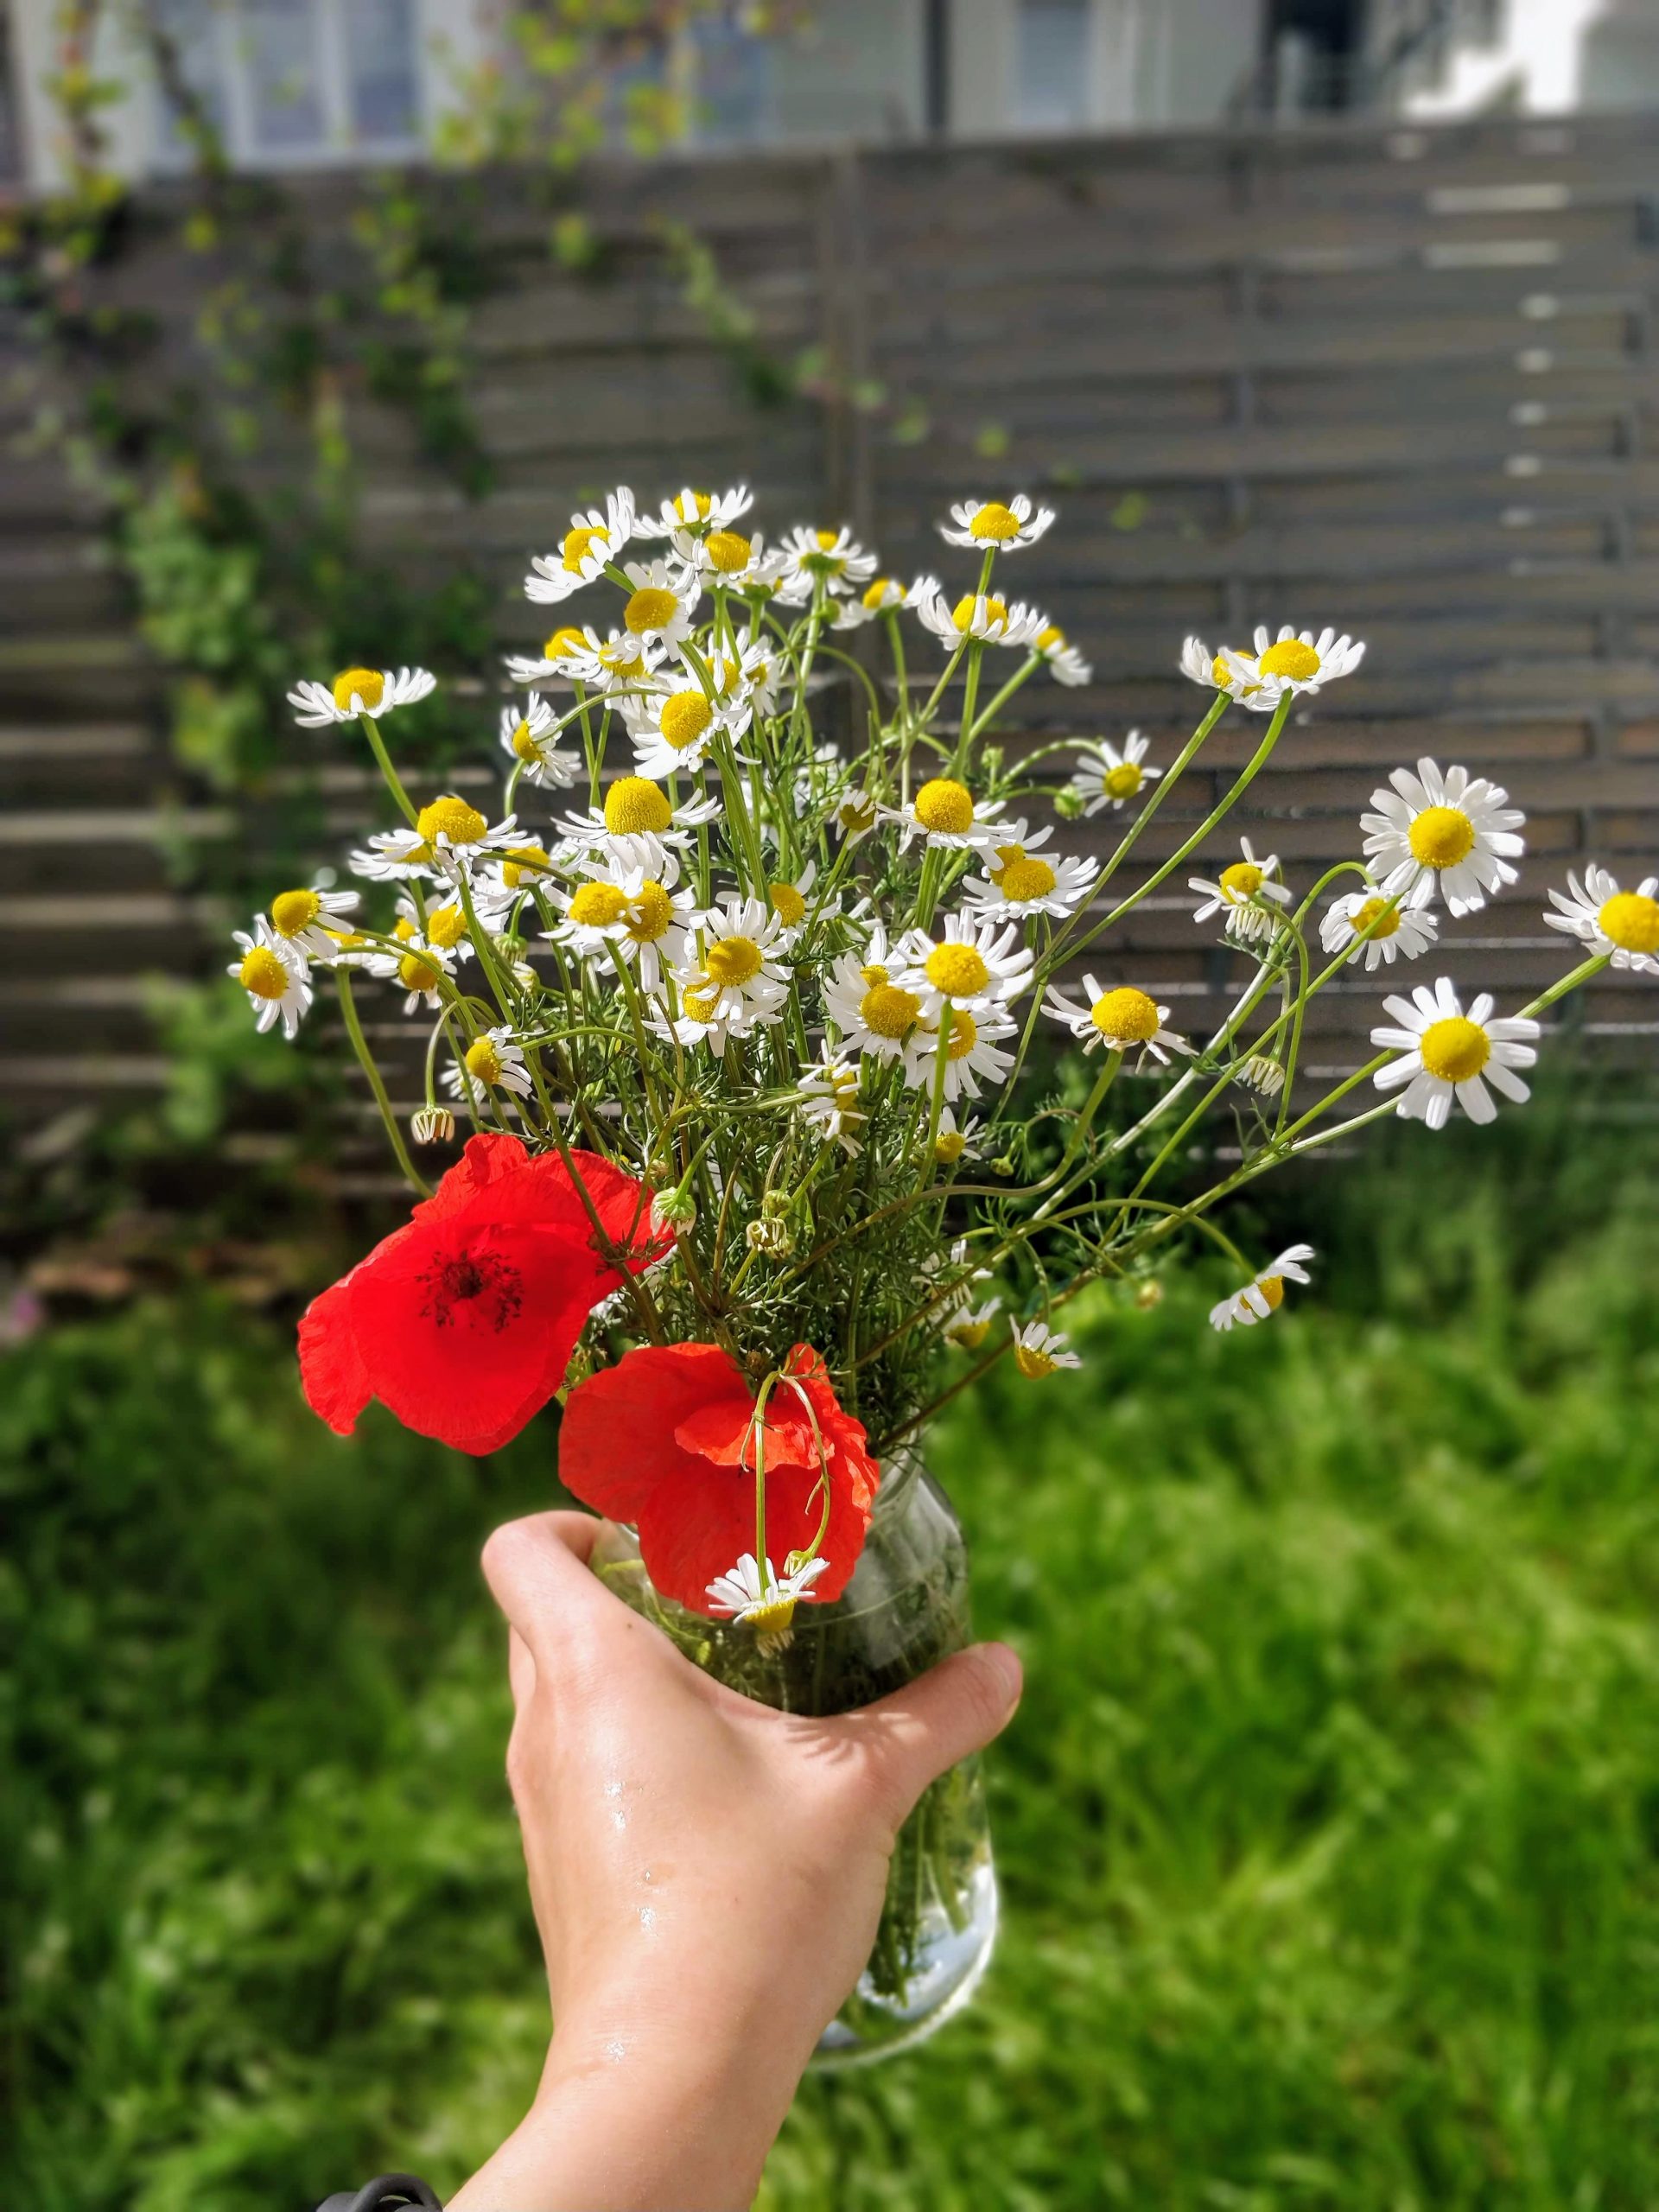 hoa cúc dại trong vườn nhà